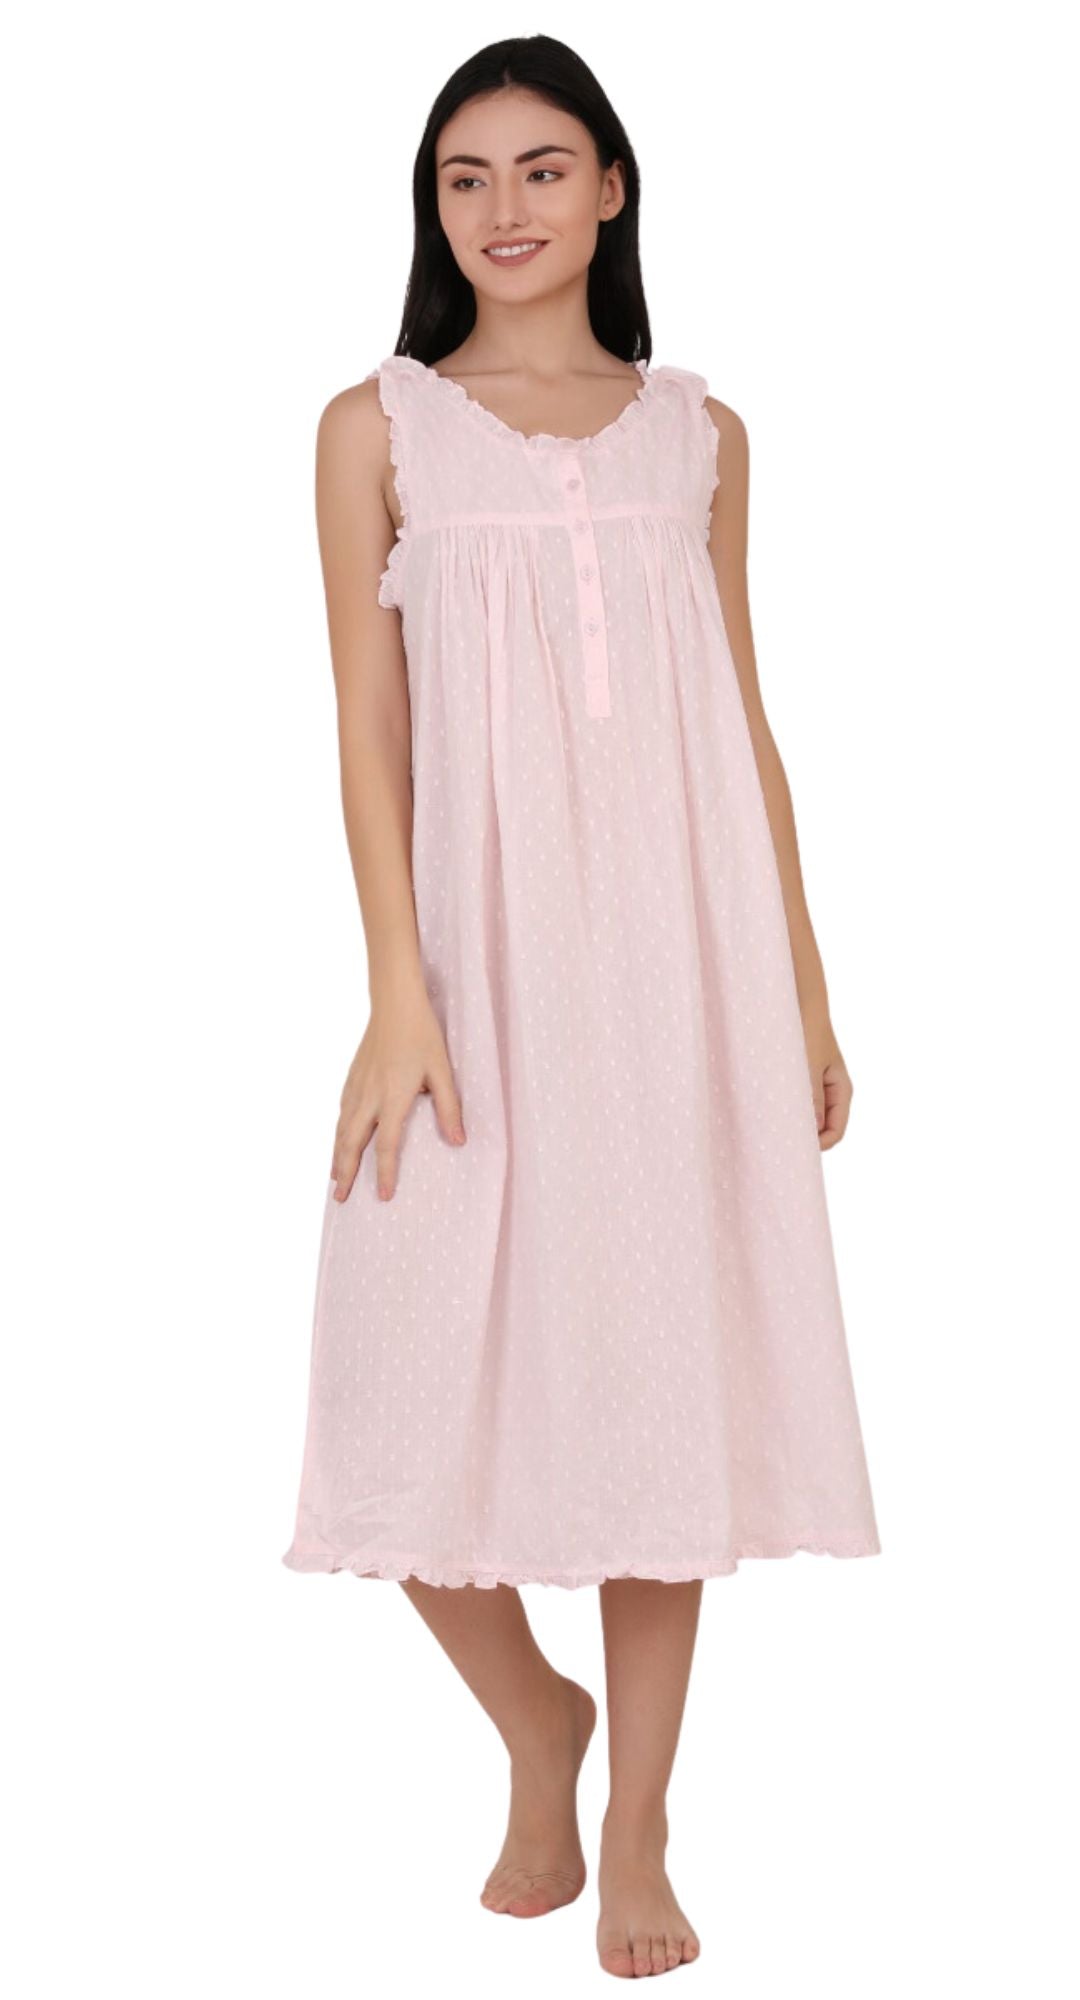 Mimi Pink Cotton Nightie with Button Shoulder